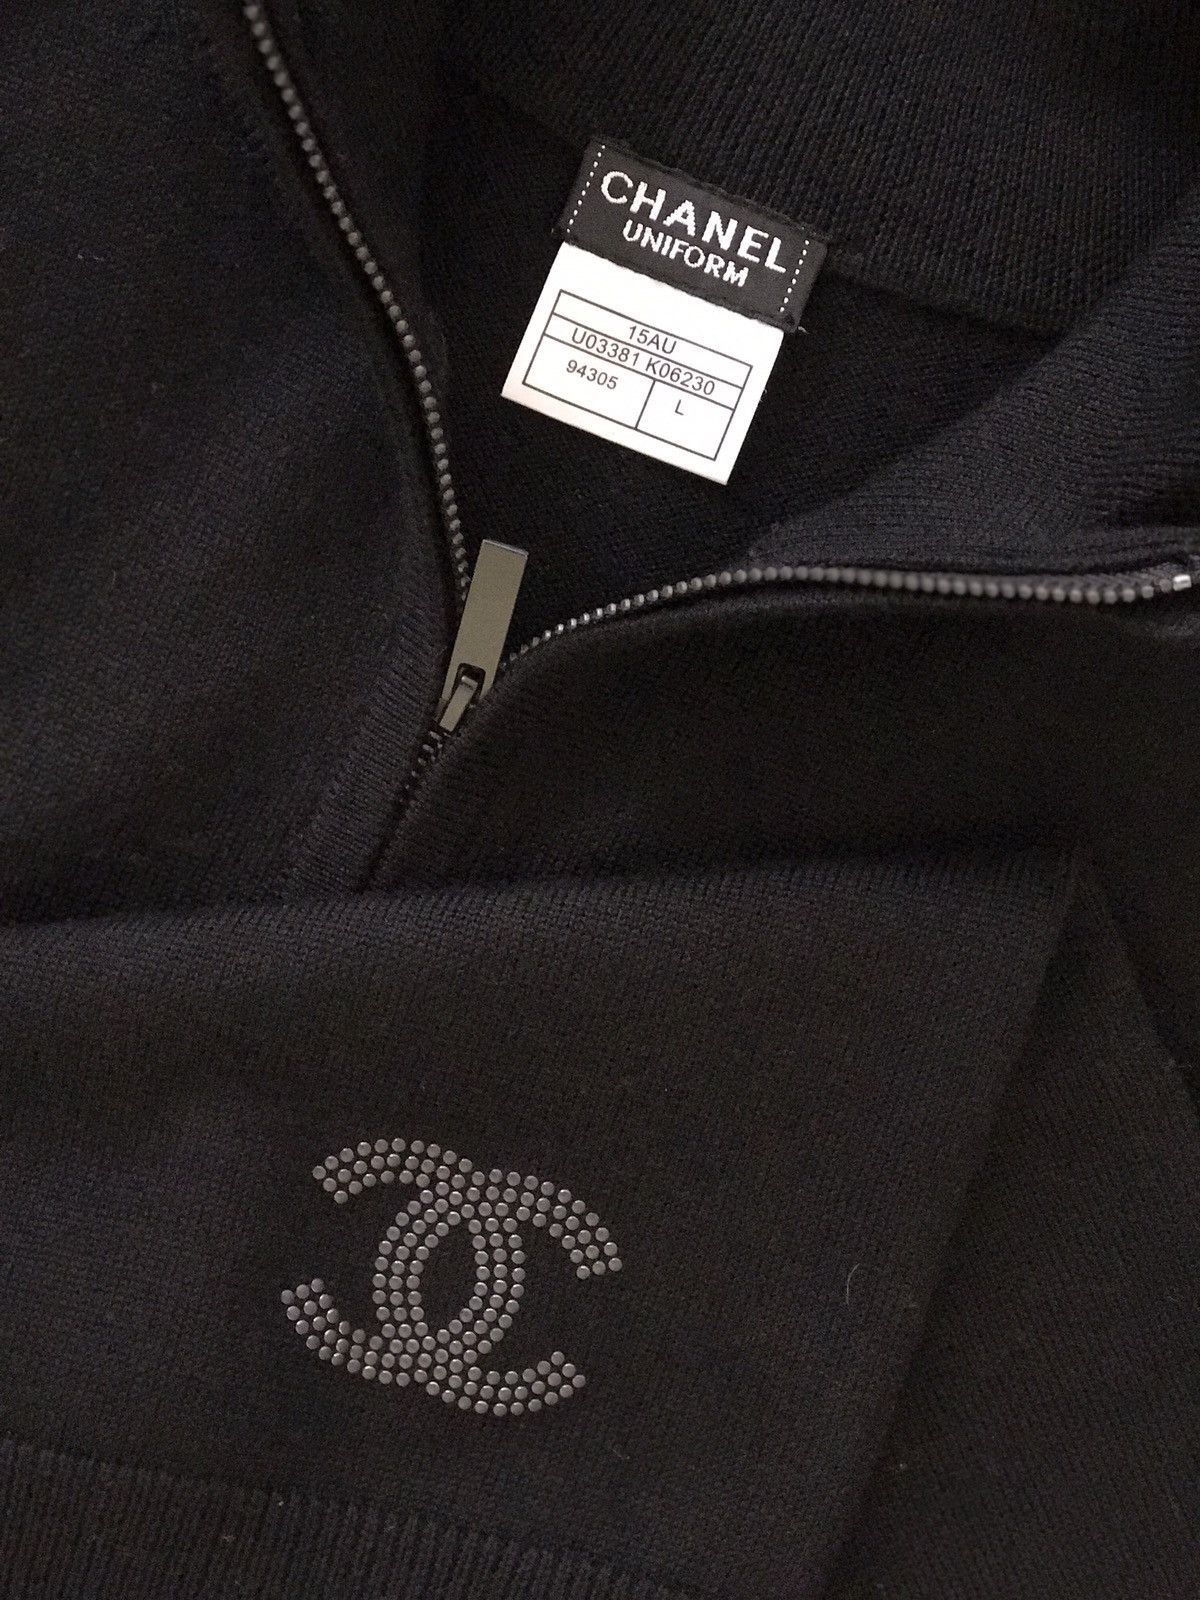 Chanel Men's Chanel Sweater Size US L / EU 52-54 / 3 - 5 Thumbnail